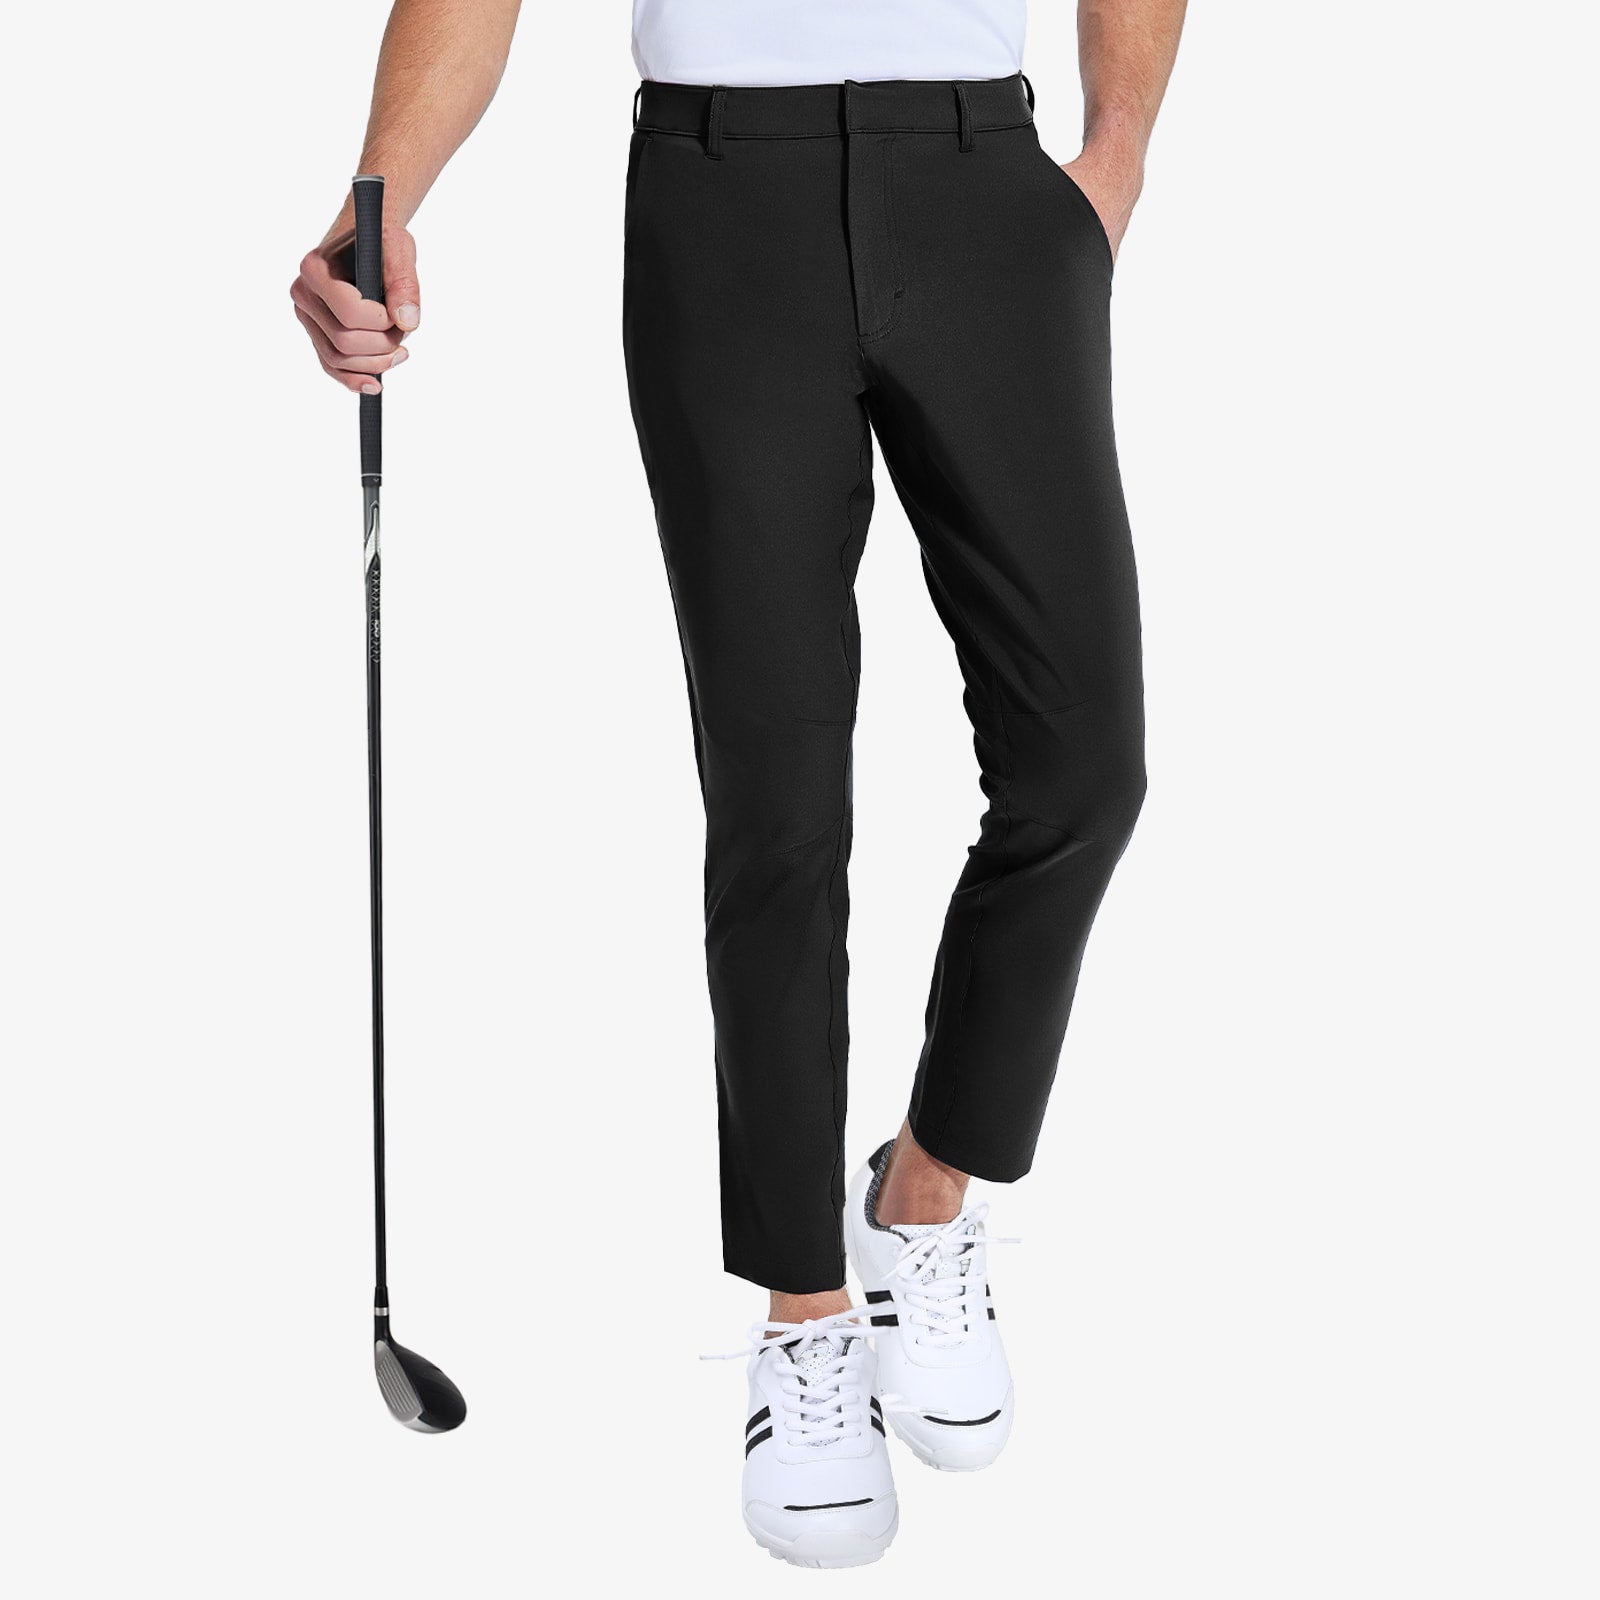 Men's Stretch Golf Pants Slim Fit Quick Dry Pants Men Train Pants Black / S MIER